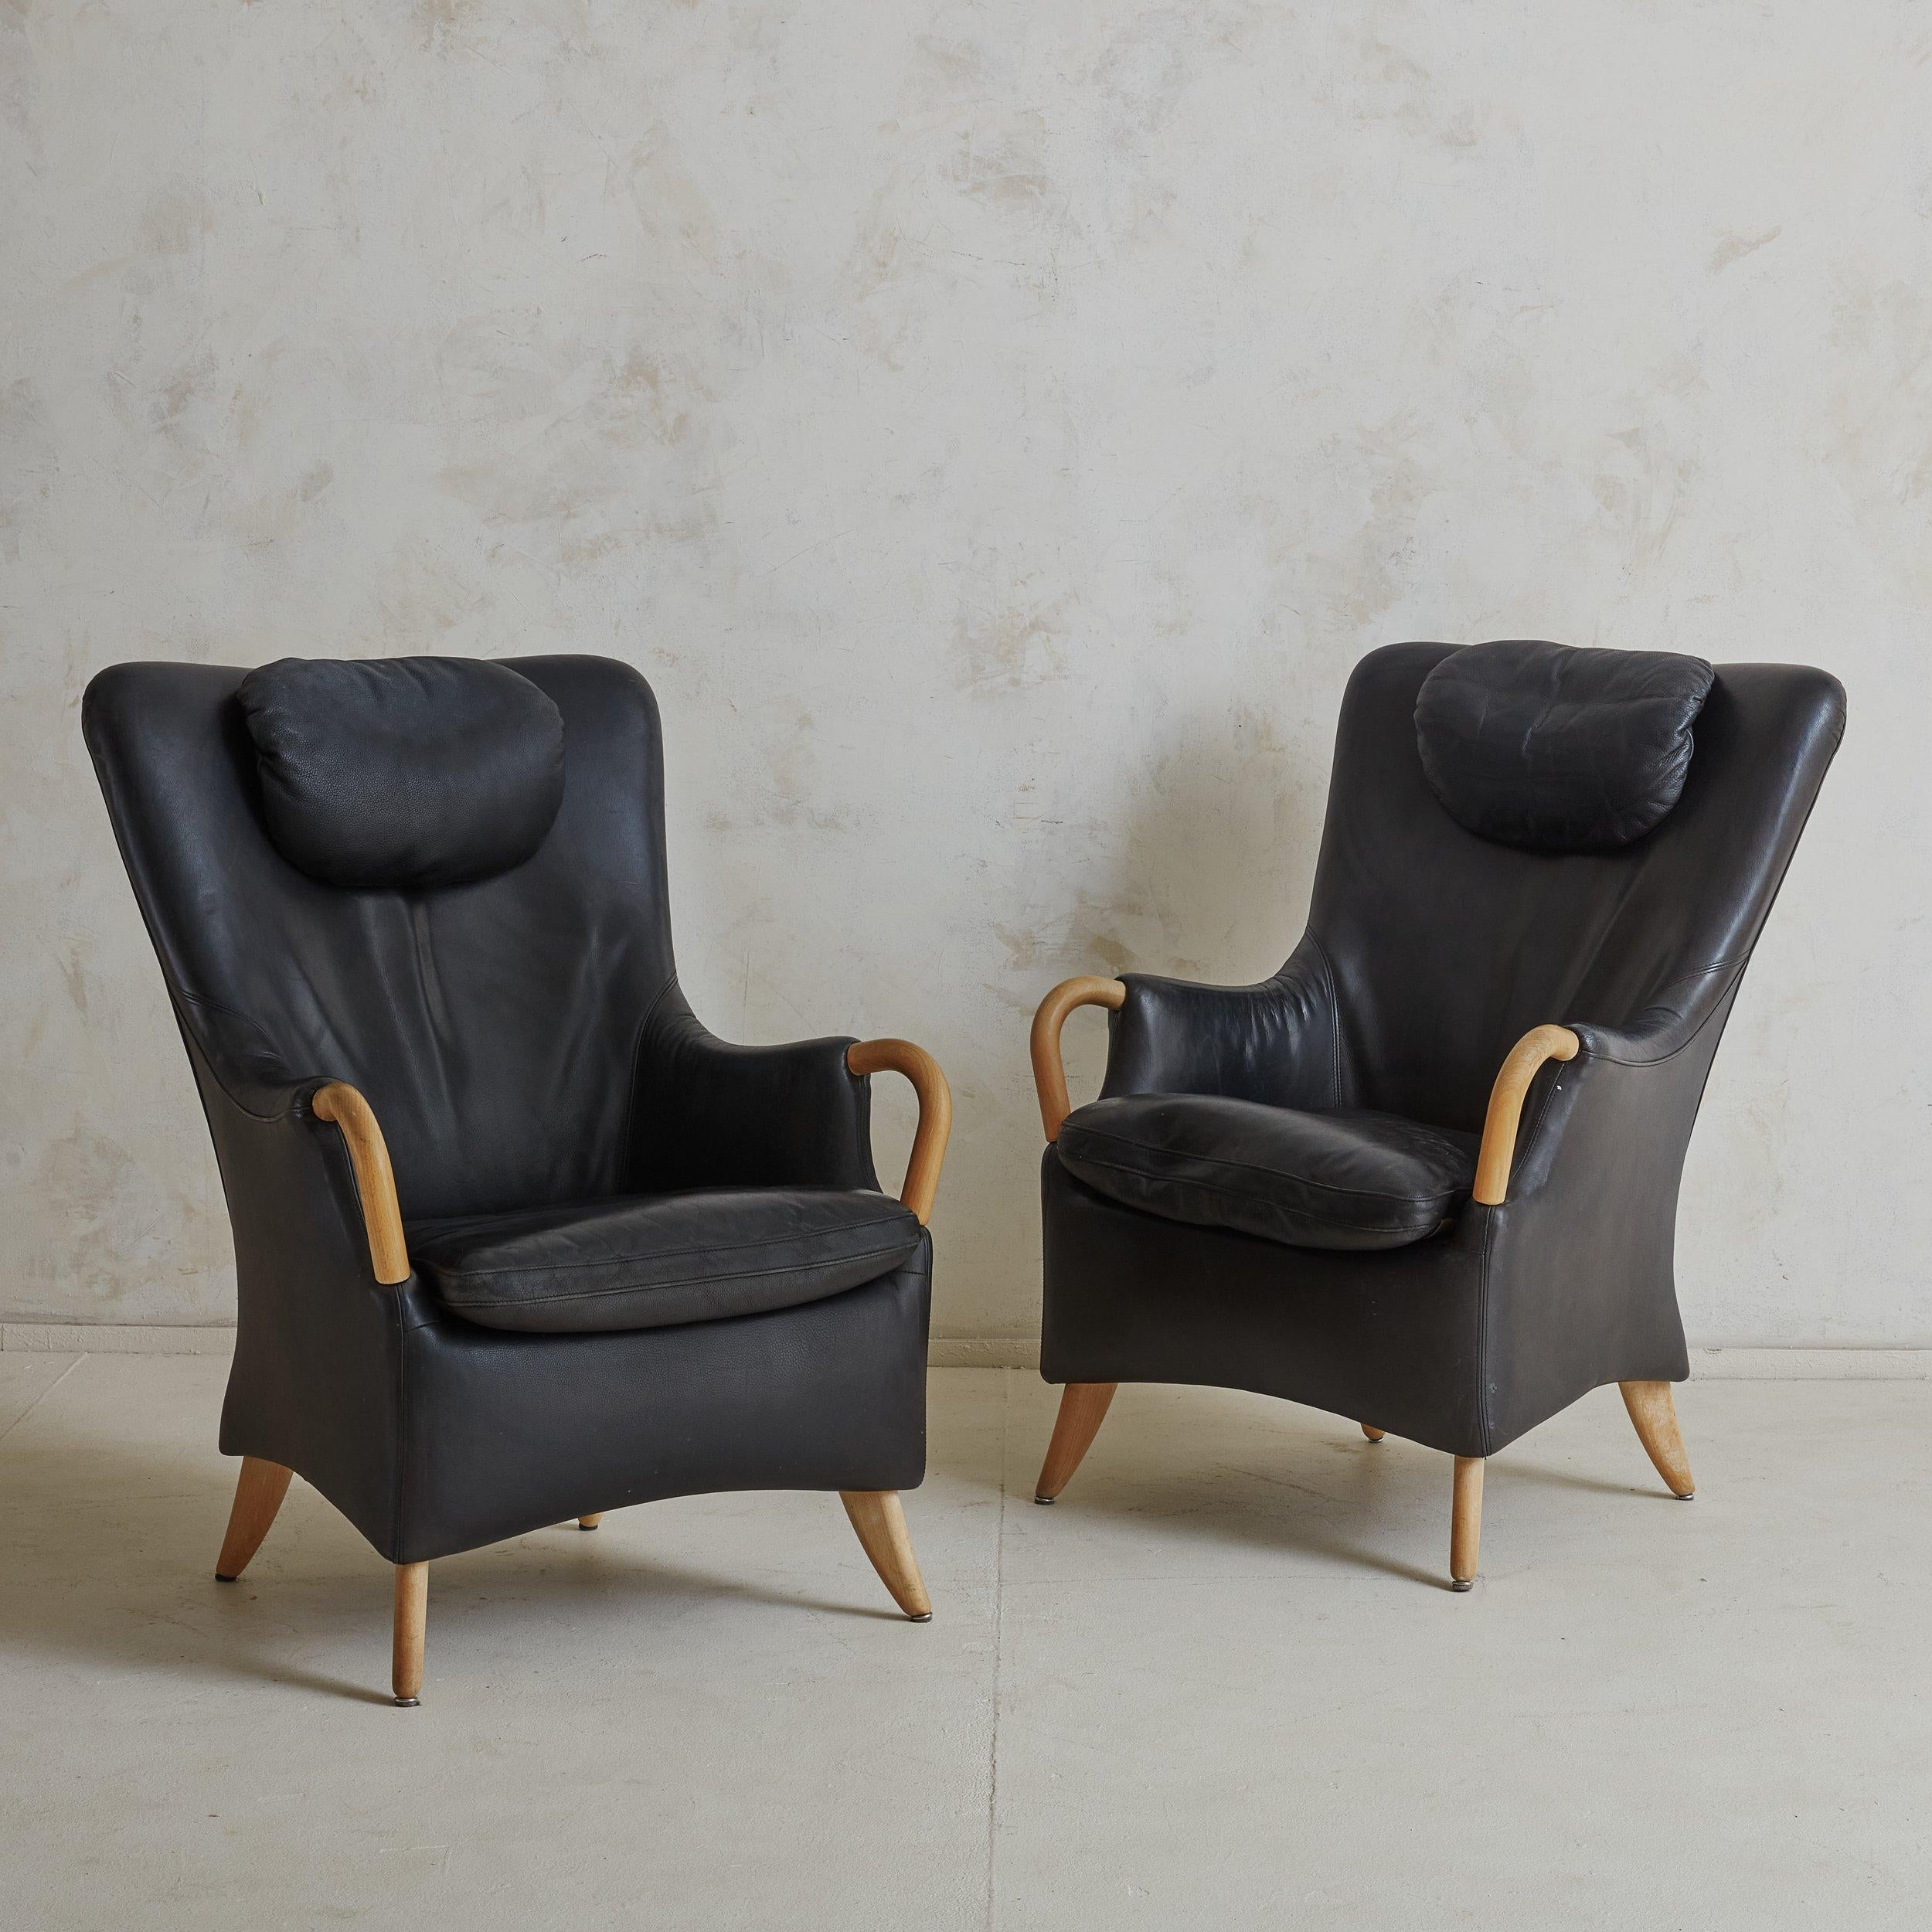 Paire de fauteuils danois en cuir noir et pouf assorti, conçus par Søren Nissen & Ebbe Gehl en 1984. Ces fauteuils The Modern Scandinavian présentent des armatures sculpturales à dos d'aile et les trois pièces sont composées de bois de hêtre blond